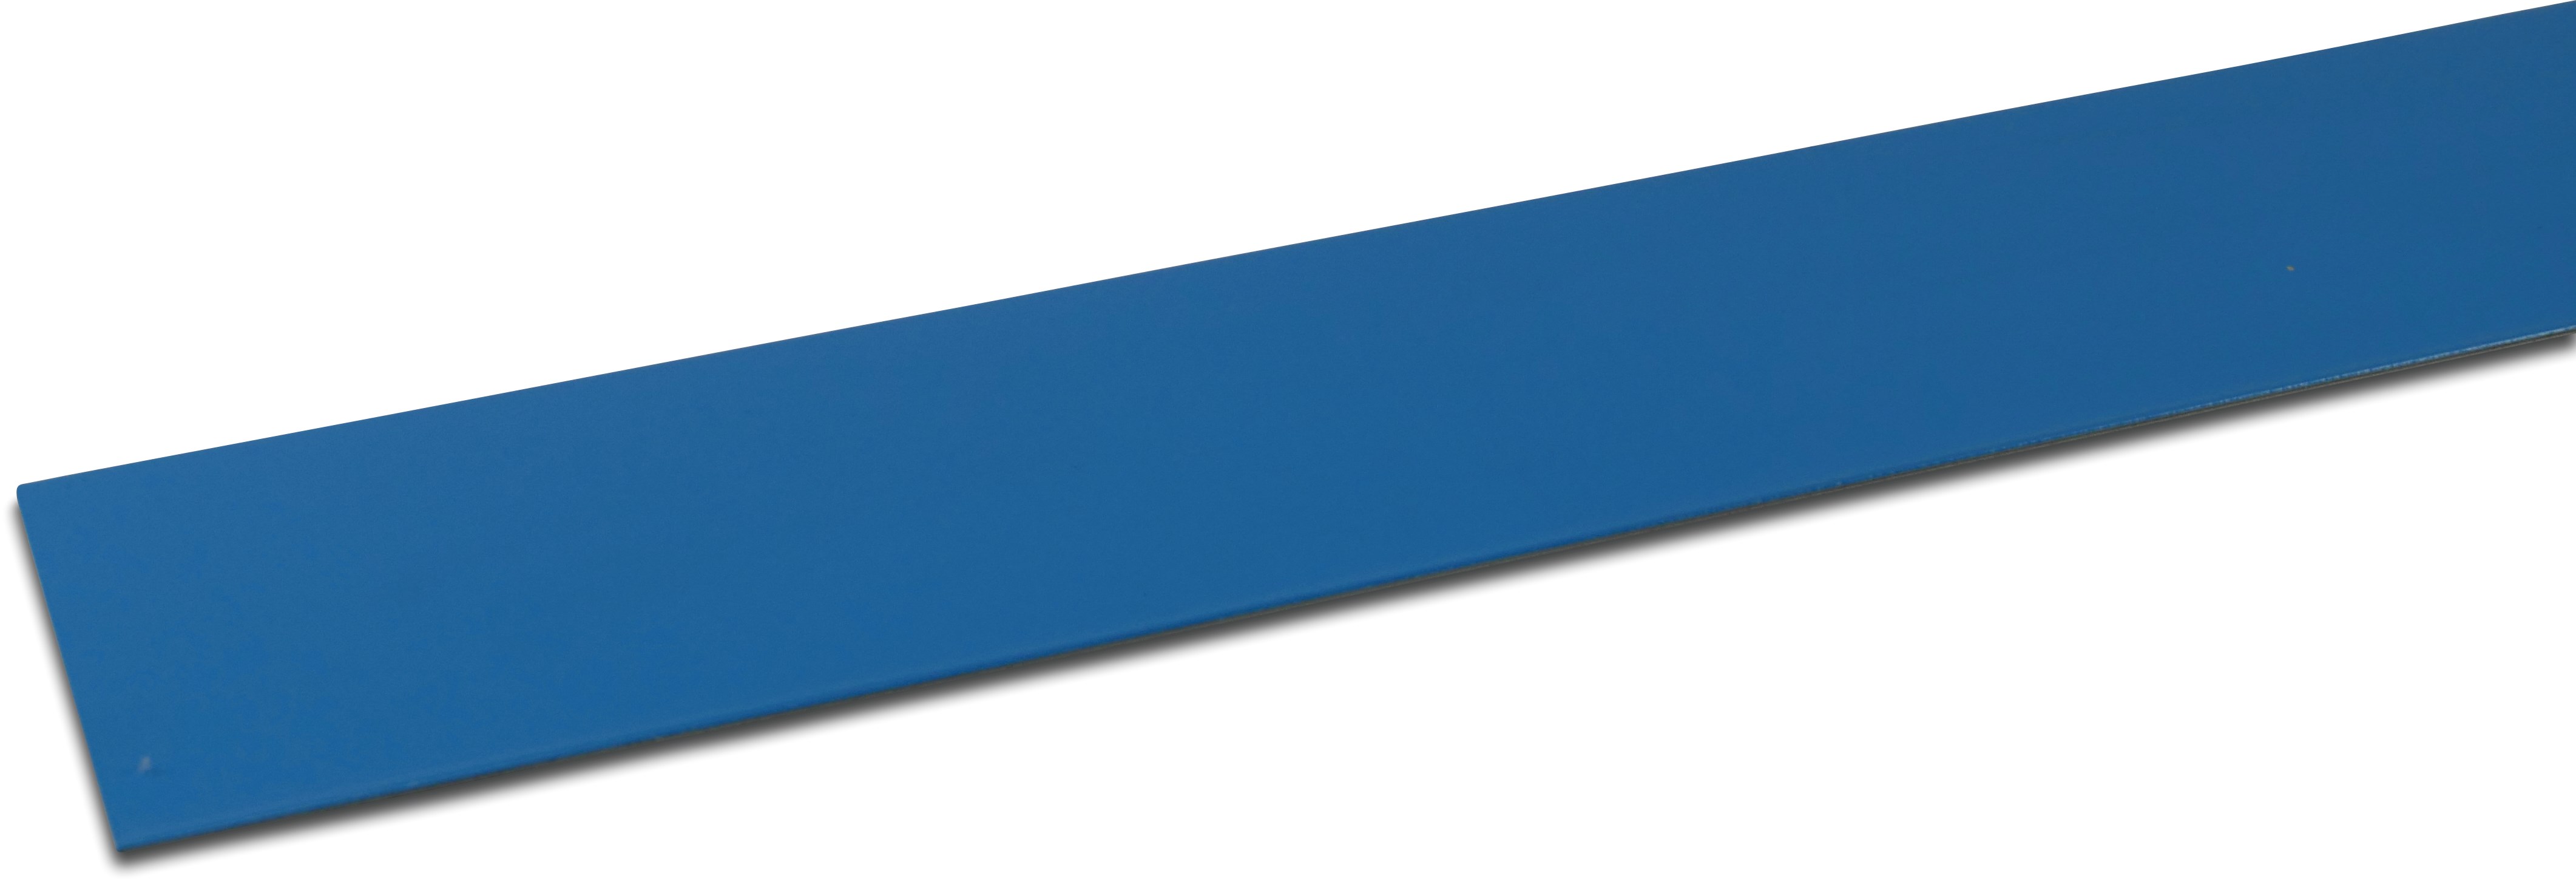 Elbe Strook PVC gecoat metaal 70 mm x 2000 mm blauw 2m